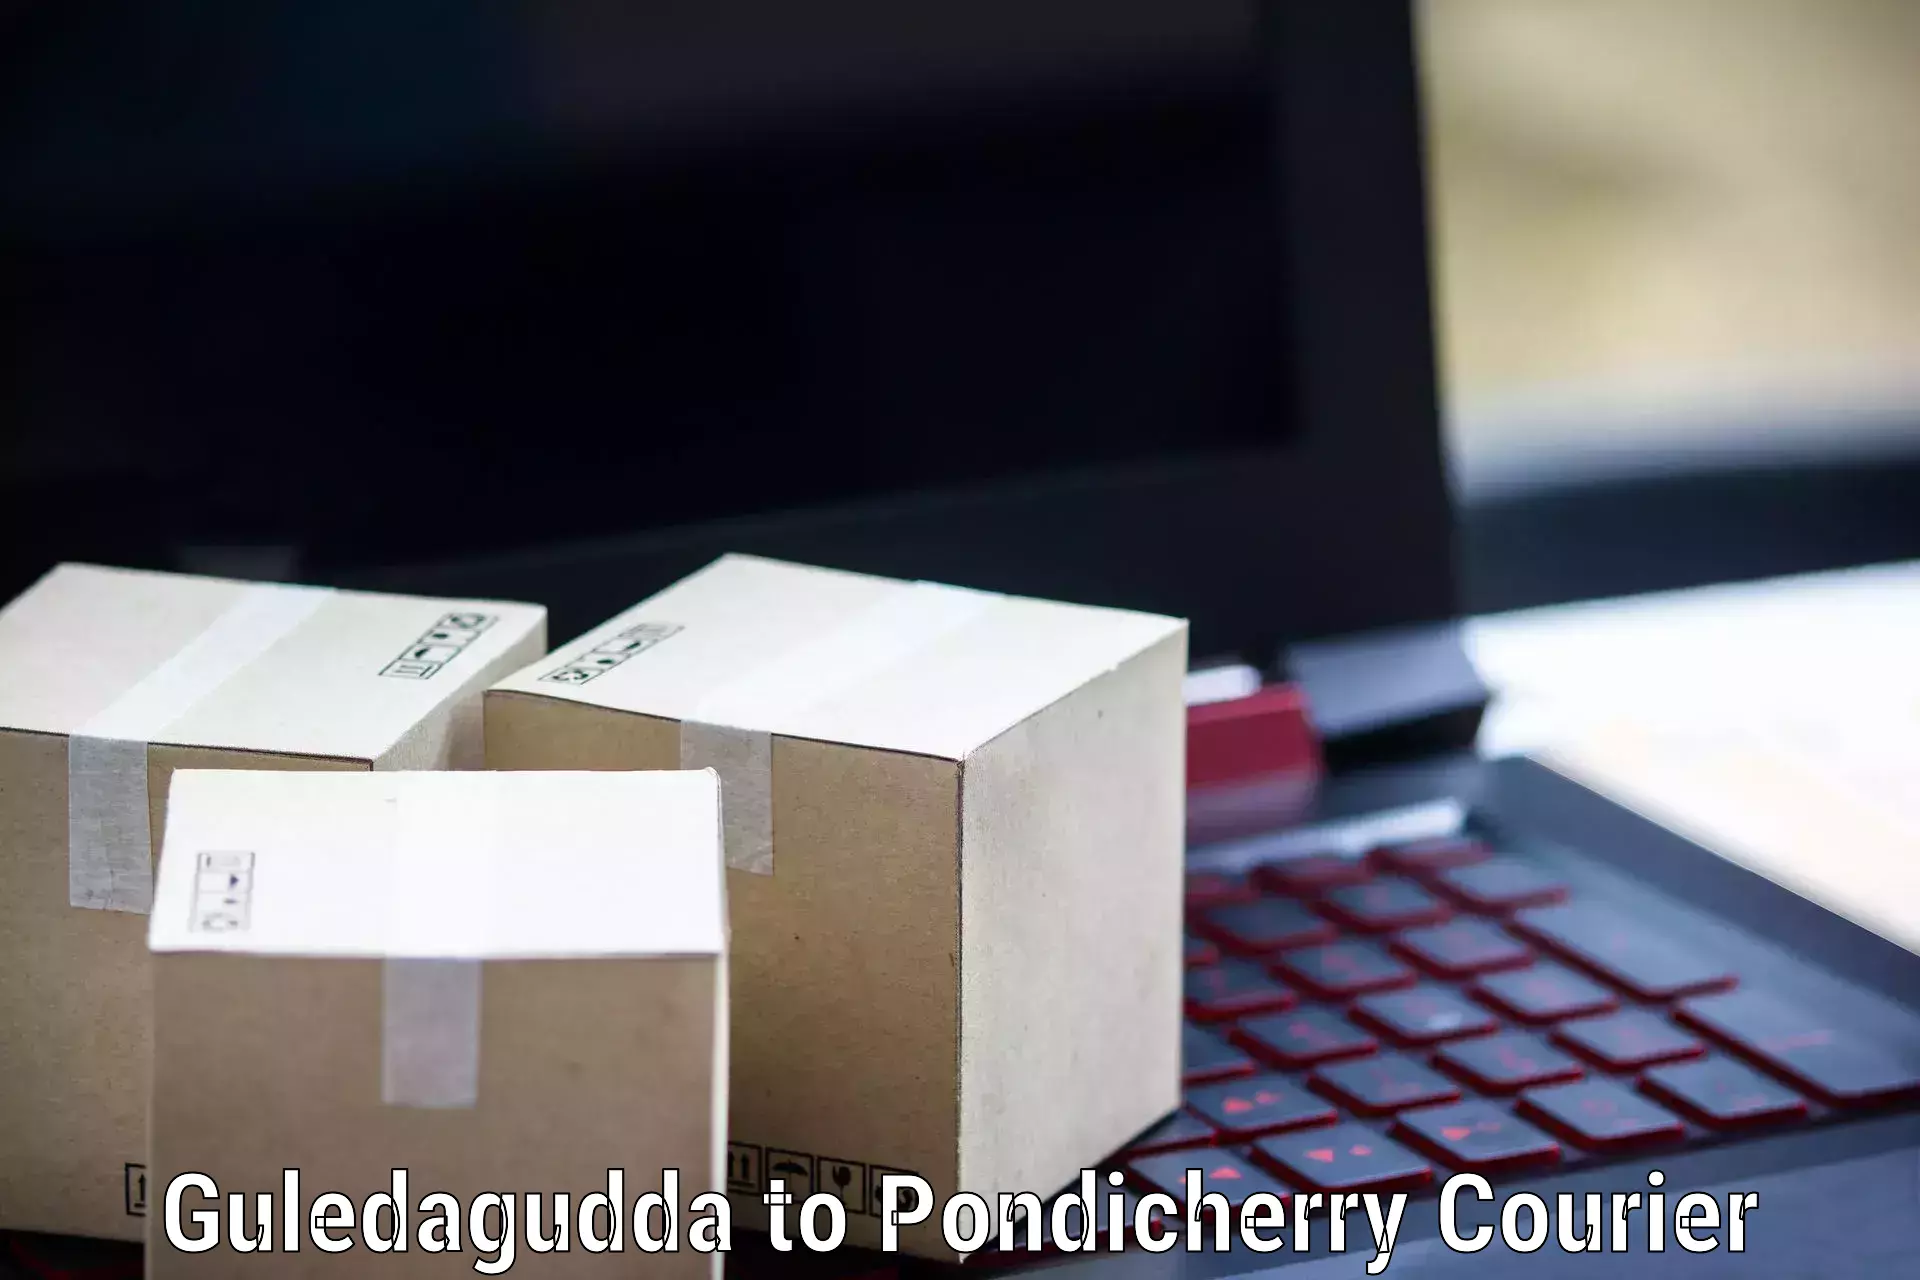 On-demand courier Guledagudda to Pondicherry University